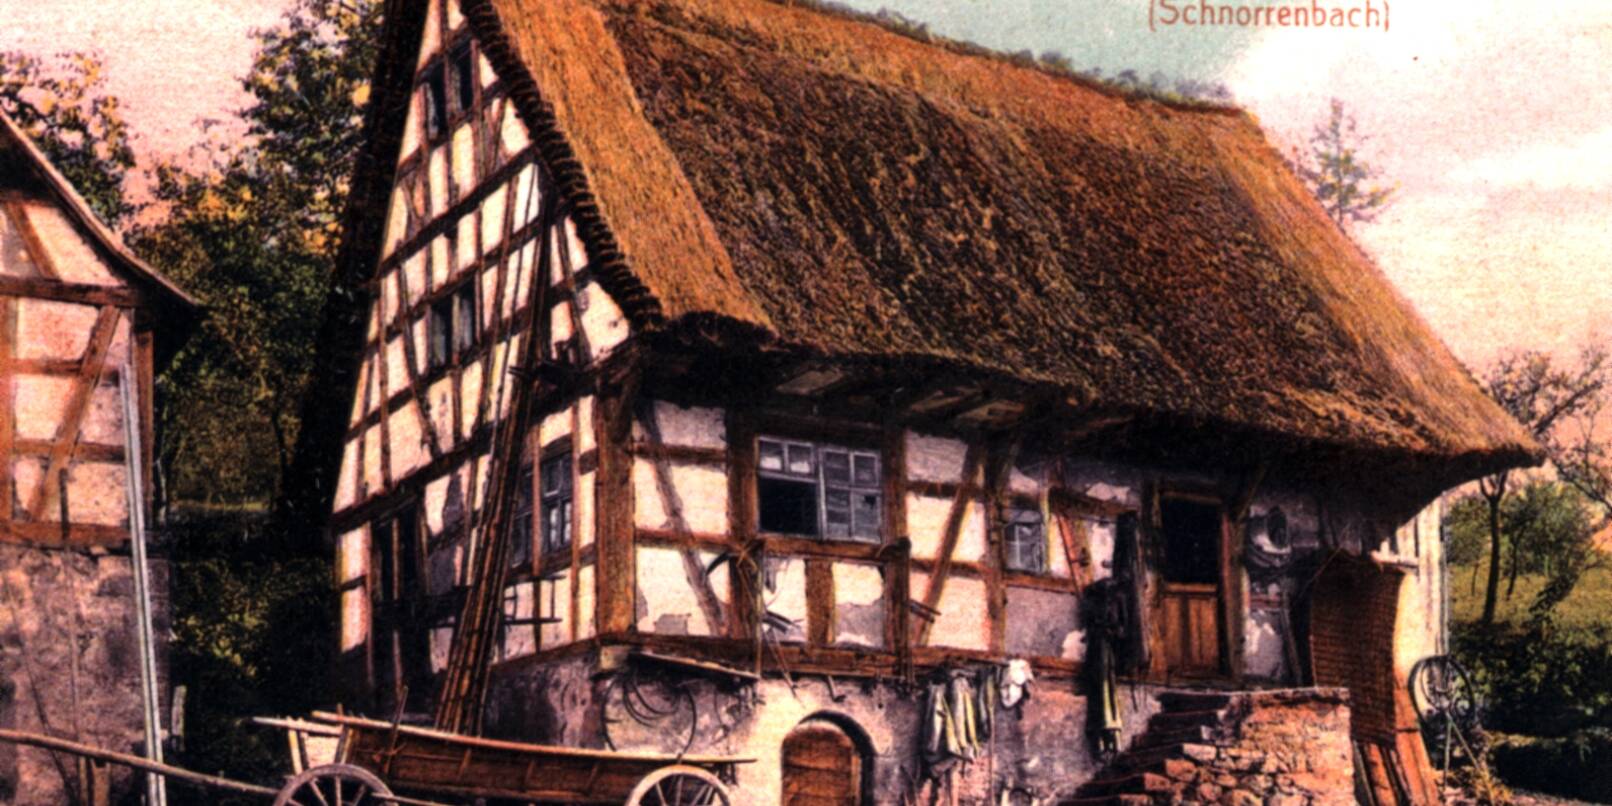 Die Ansichtskarte zeigt das angeblich älteste Haus im Odenwald von 1564 in Schnorrenbach, das zu Löhrbach gehört. Diese Aufnahme entstand um das Jahr 1910. Zu sehen ist das Haus mit Strohdach, was eine erhöhte Brandgefahr bedeutete, wie Gemeindearchivar Günter Körner schreibt.